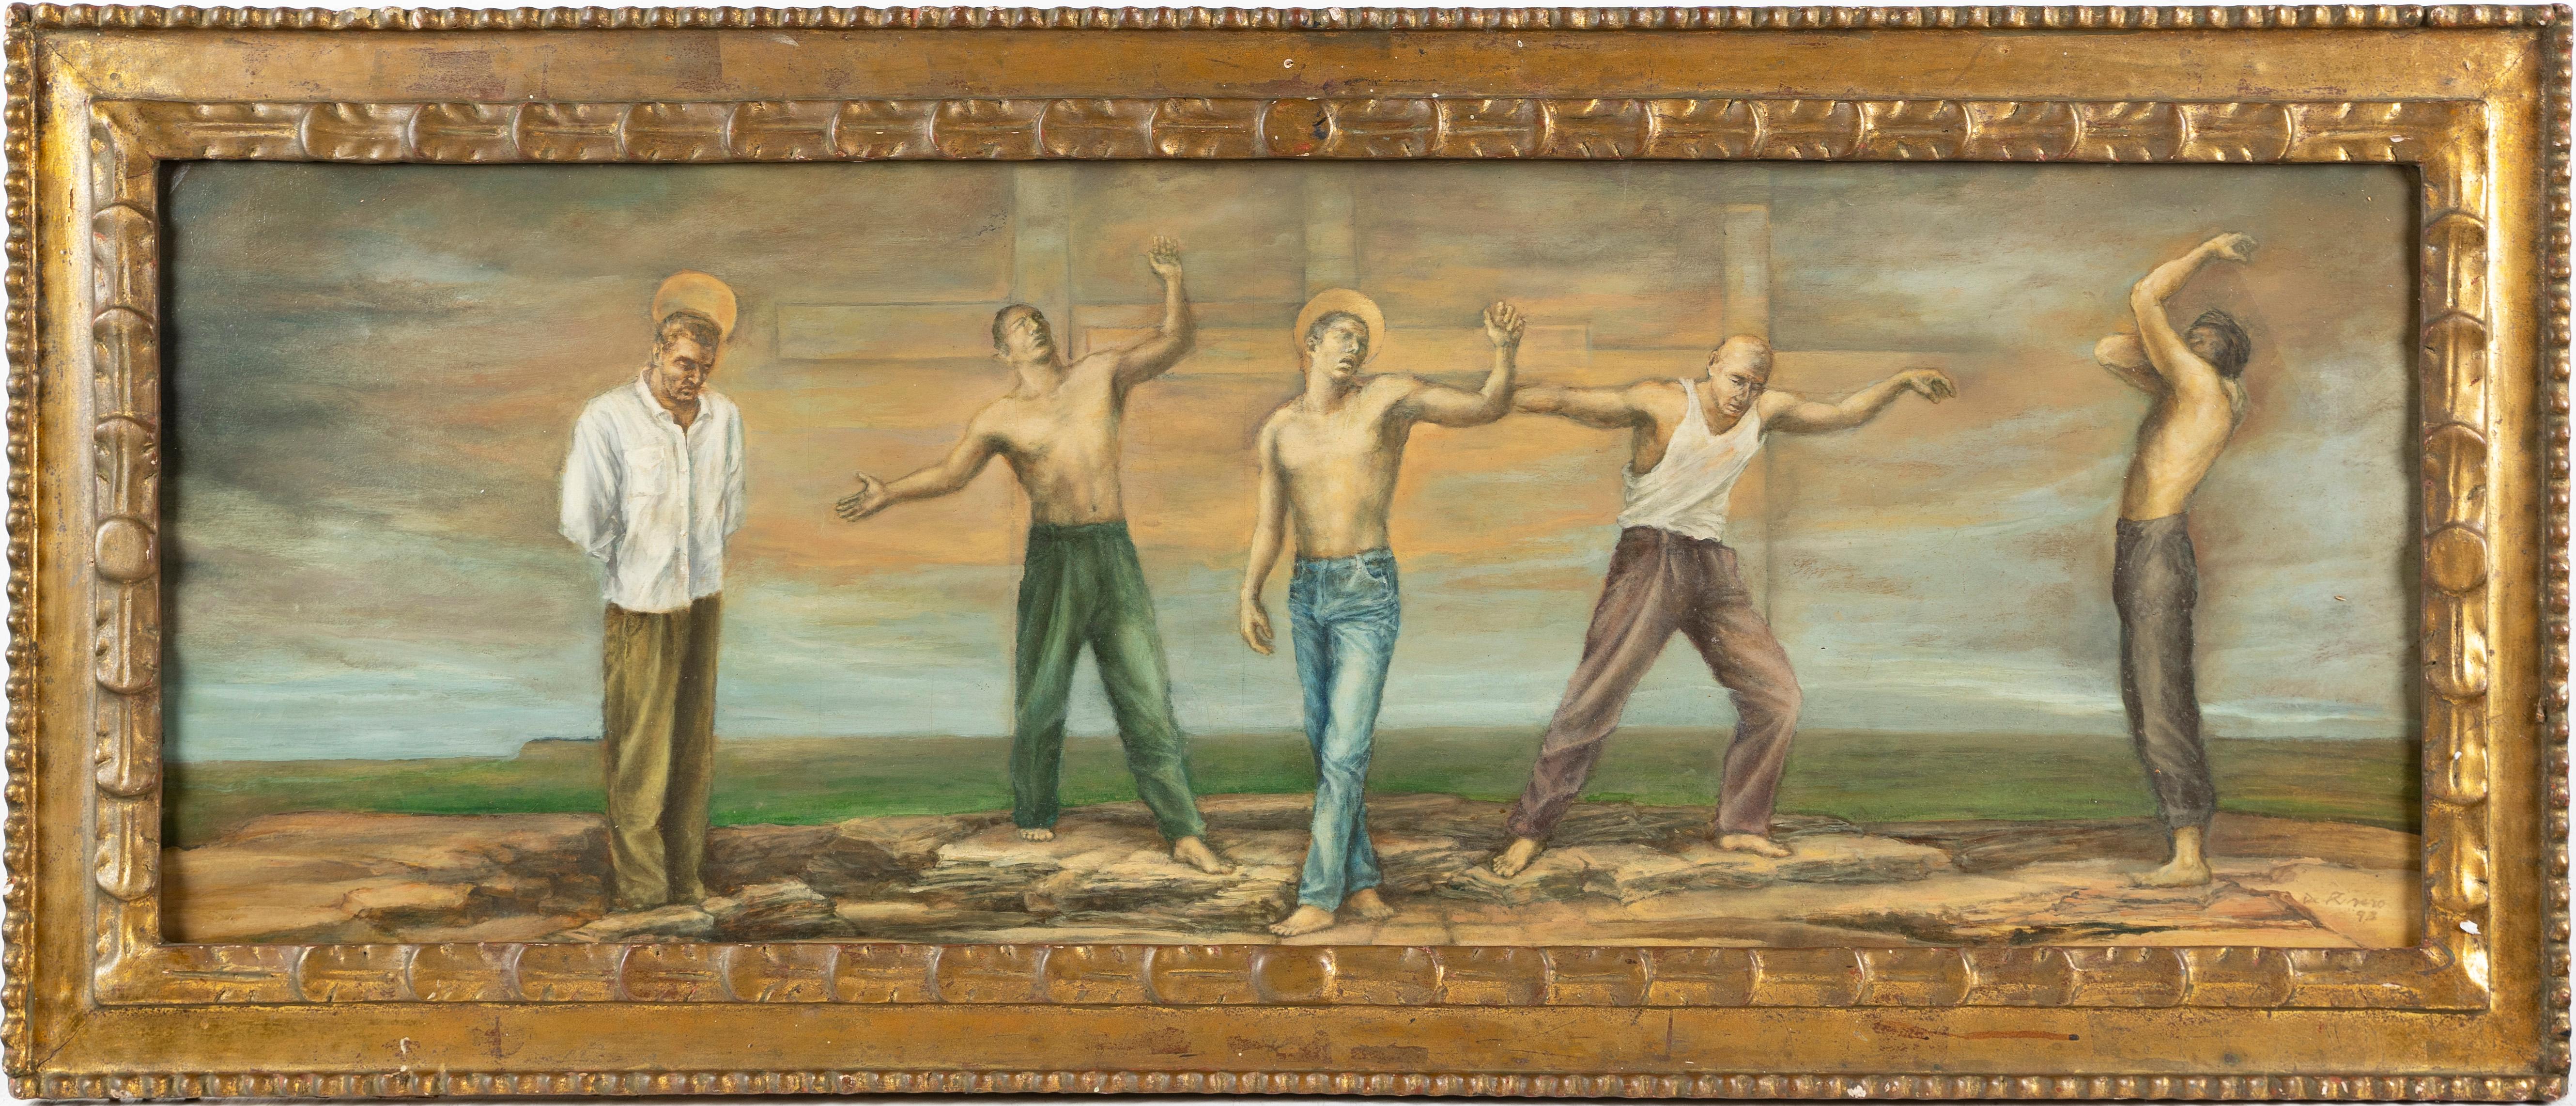 Großes signiertes surreales nacktes männliches Porträt, symbolistische Landschaft, gerahmtes Ölgemälde – Painting von Unknown